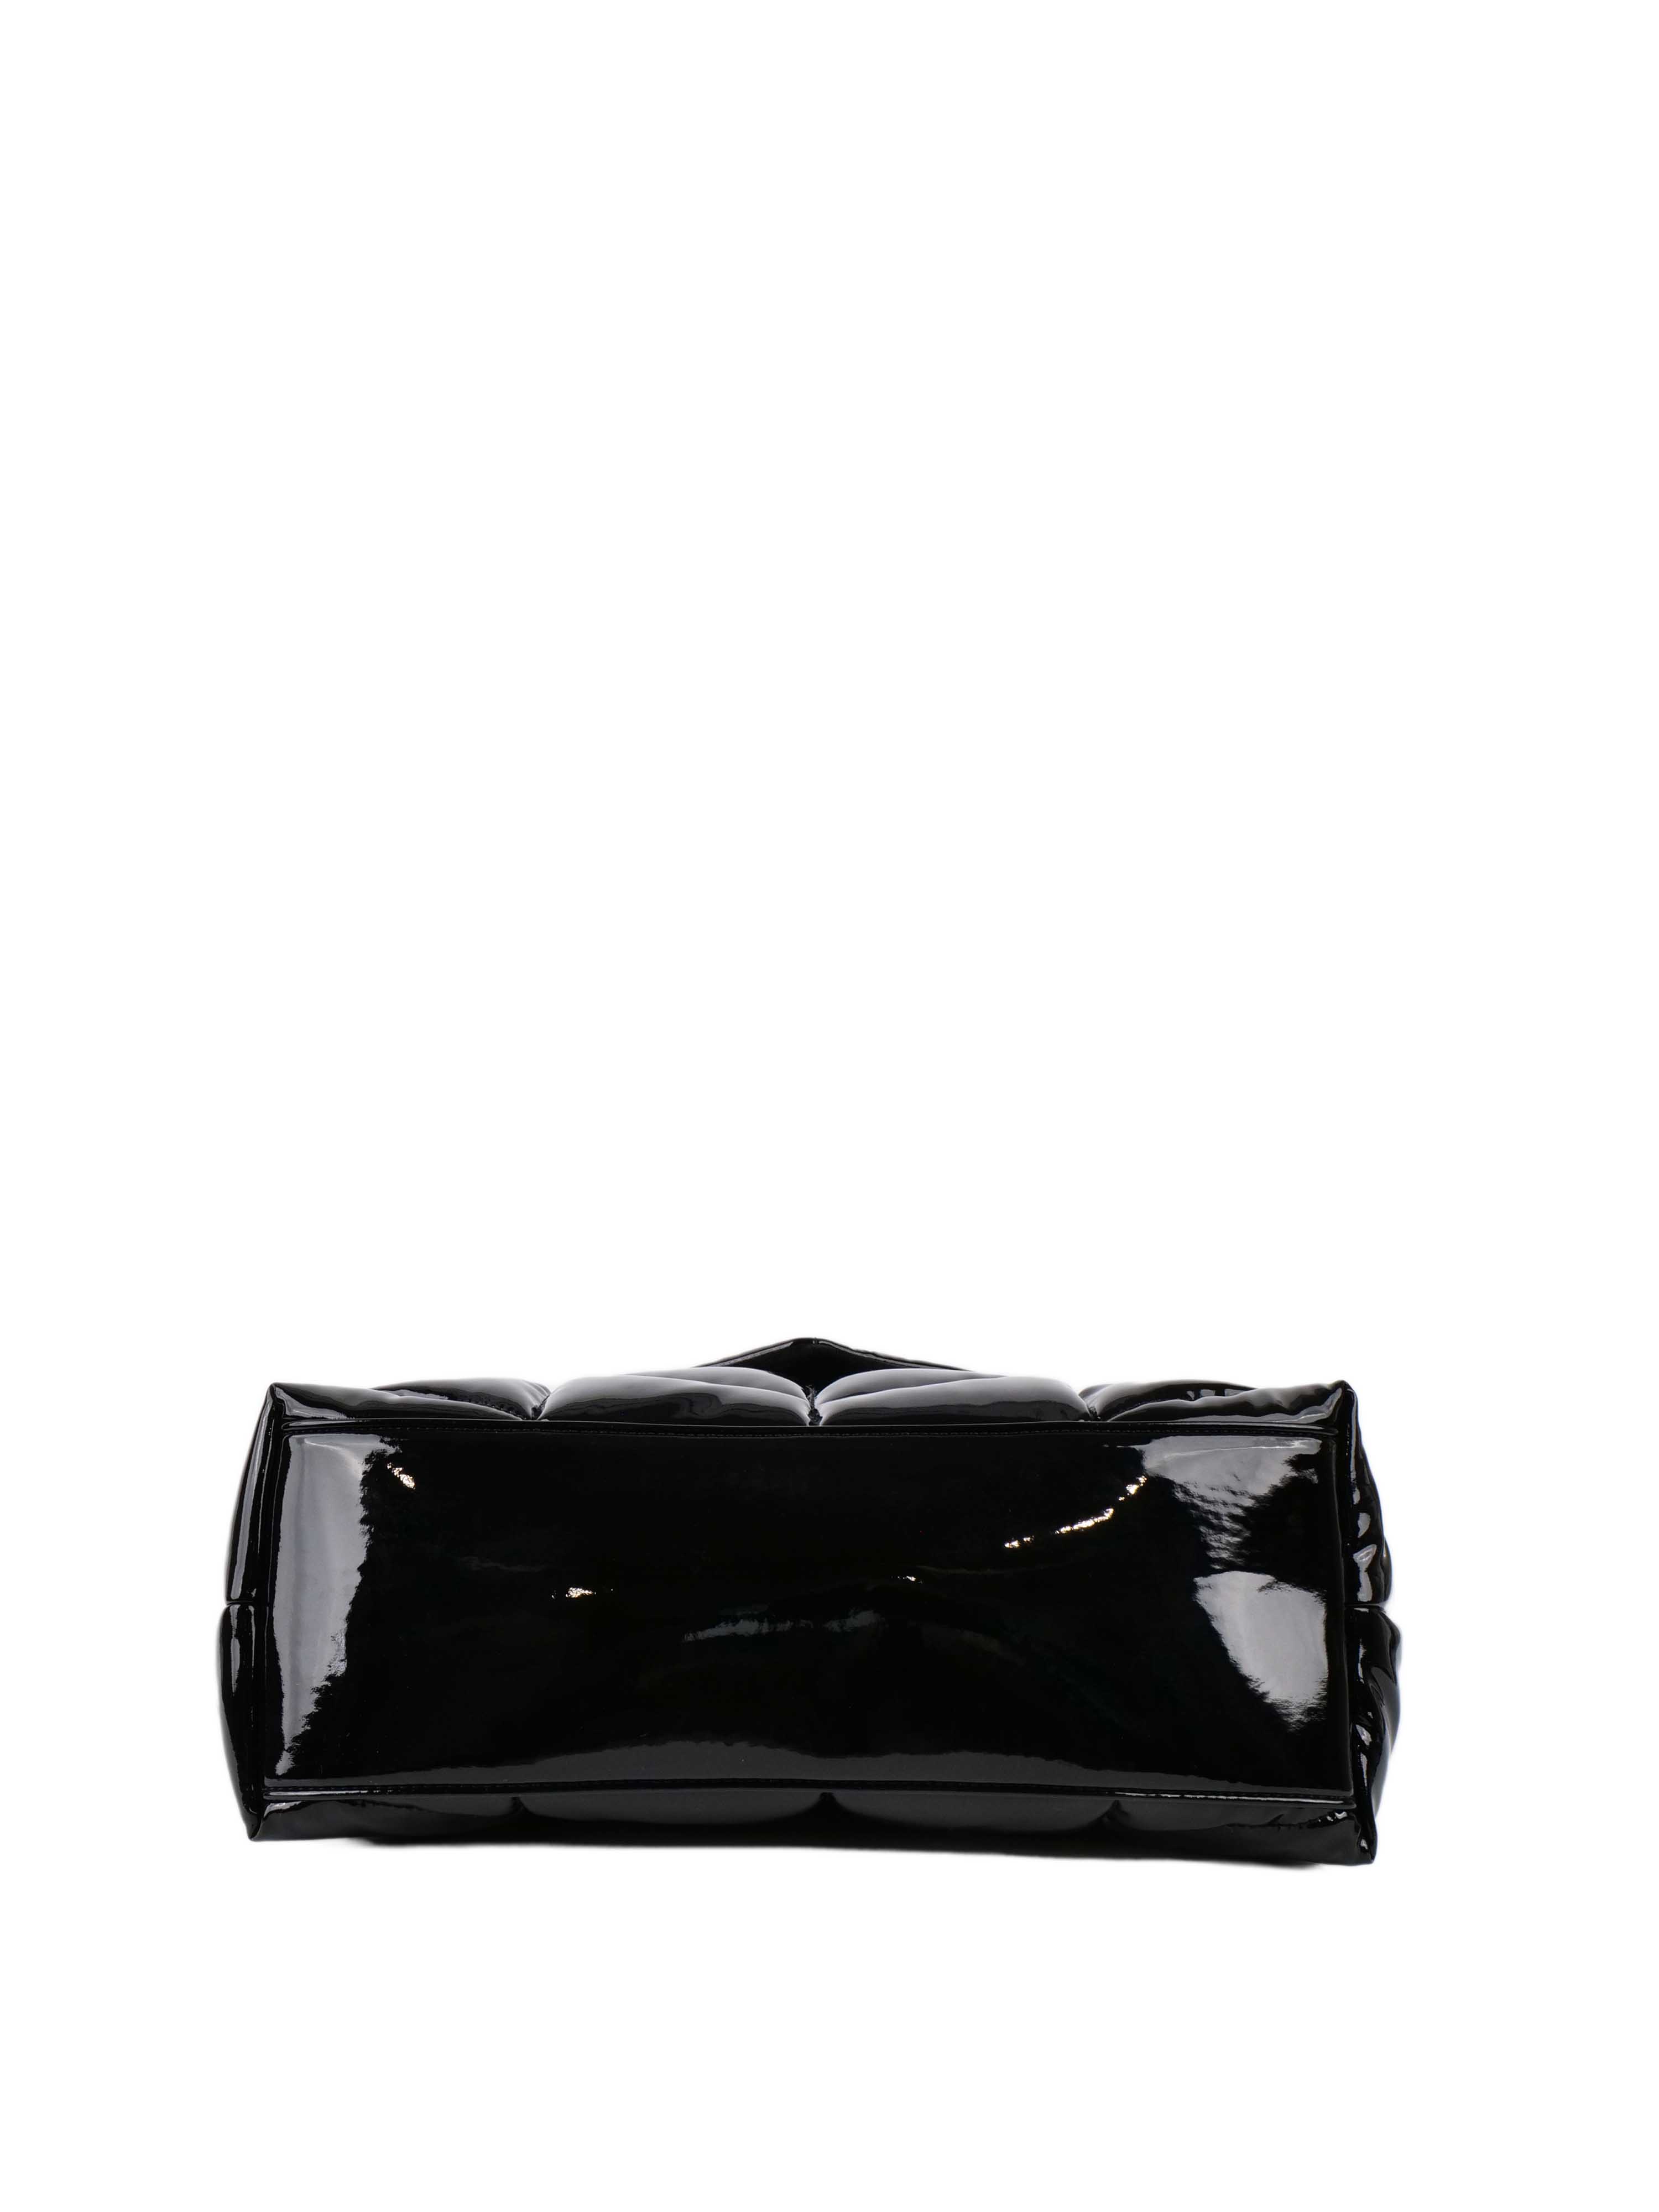 Saint Laurent Medium Black Patent Puffer Bag SHW.